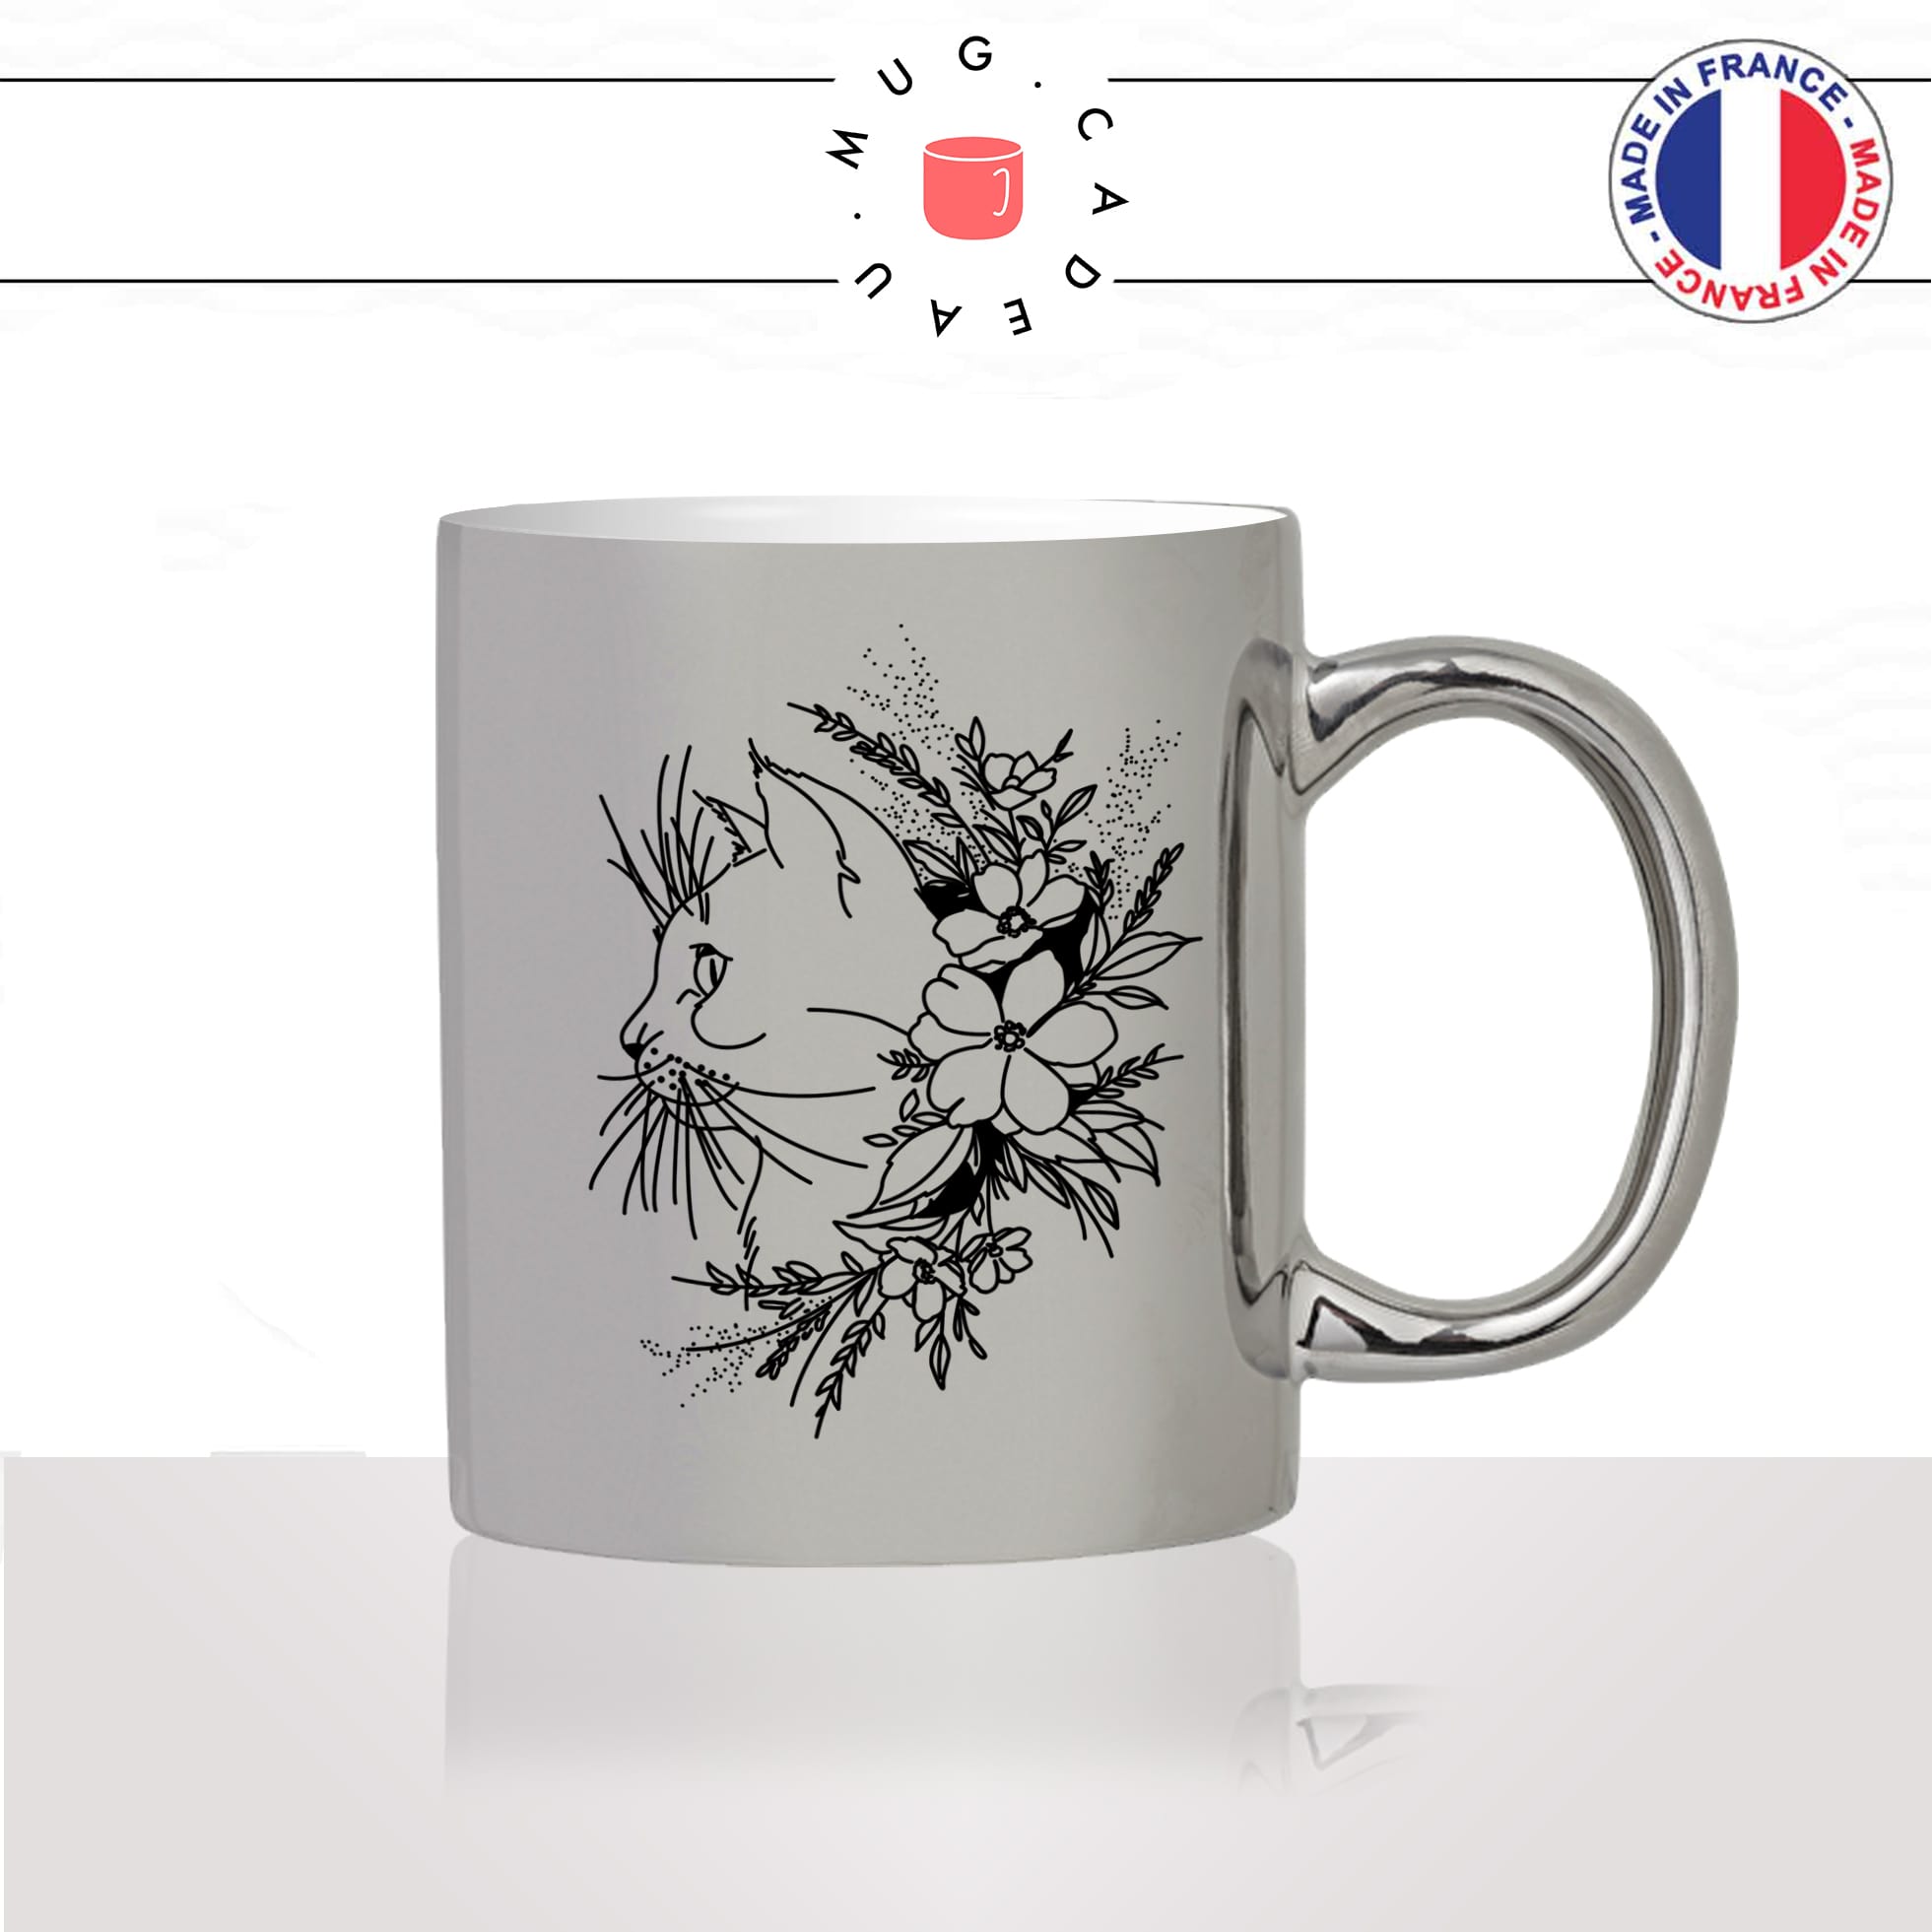 mug-tasse-argenté-silver-fleurs-moustaches-chats-animal-chaton-dessin-noir-fun-café-thé-idée-cadeau-original-personnalisable2-min